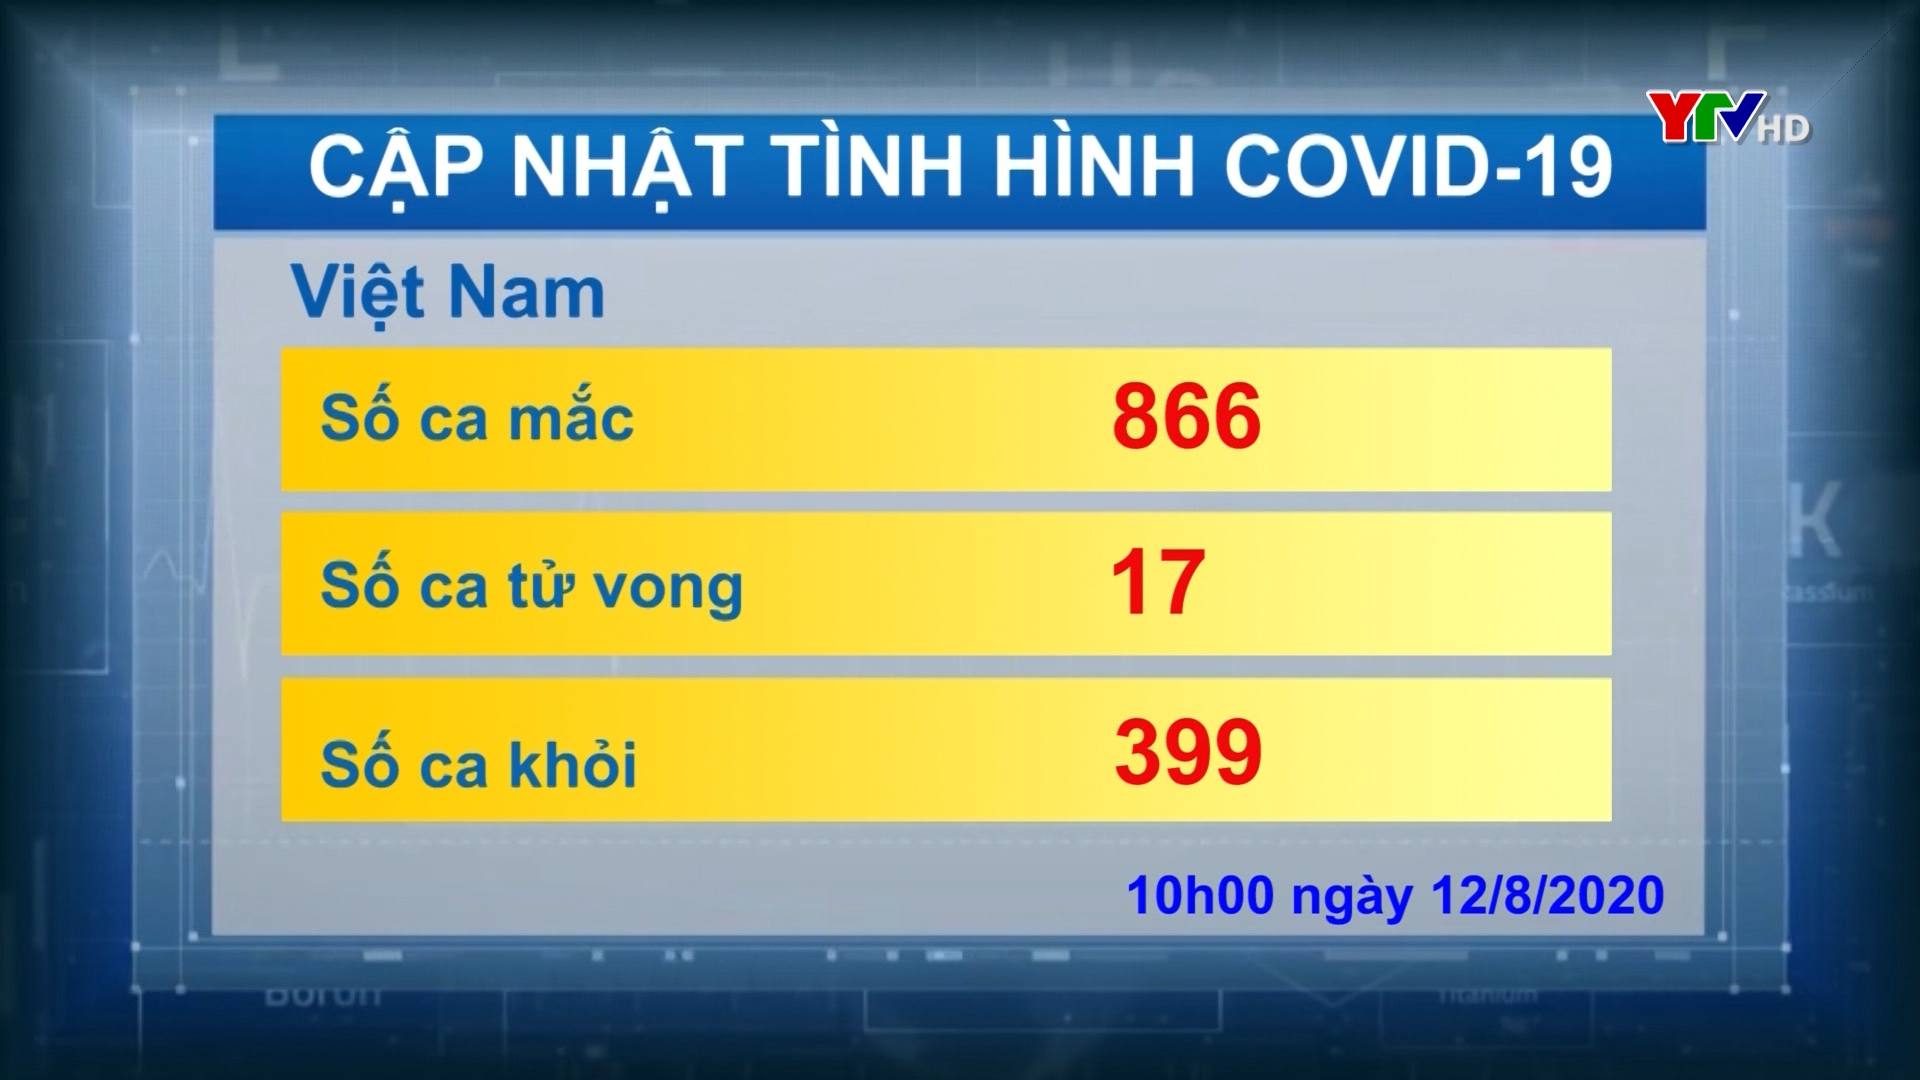 Việt Nam ghi nhận thêm 3 ca mắc mới và 1 ca tử vong do COVID - 19